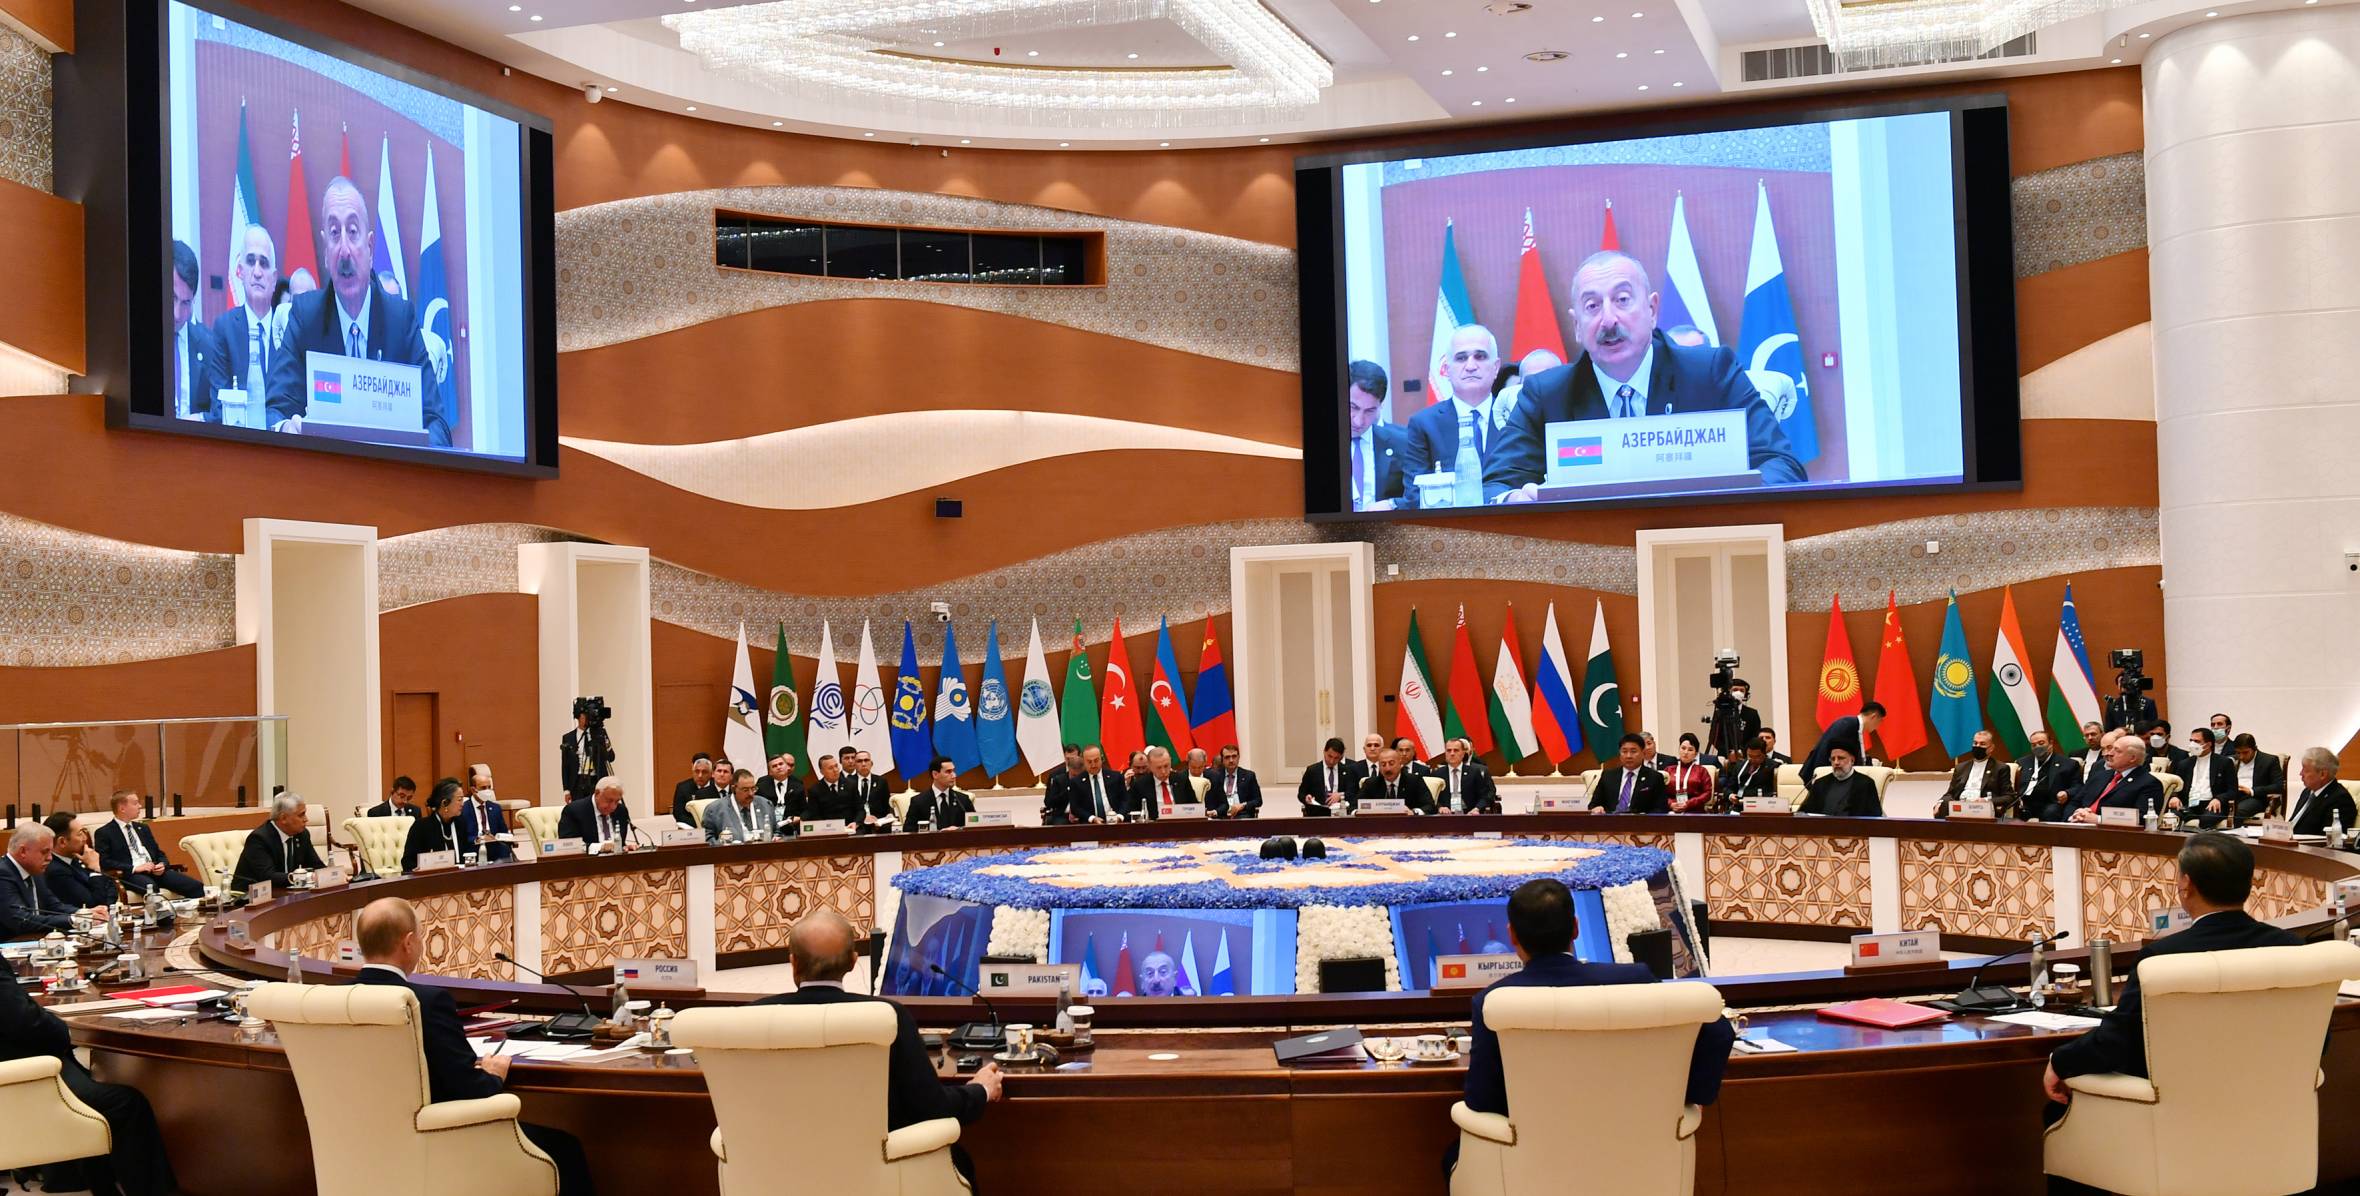 Shanghai Cooperation Organization member states Summit gets underway in Samarkand